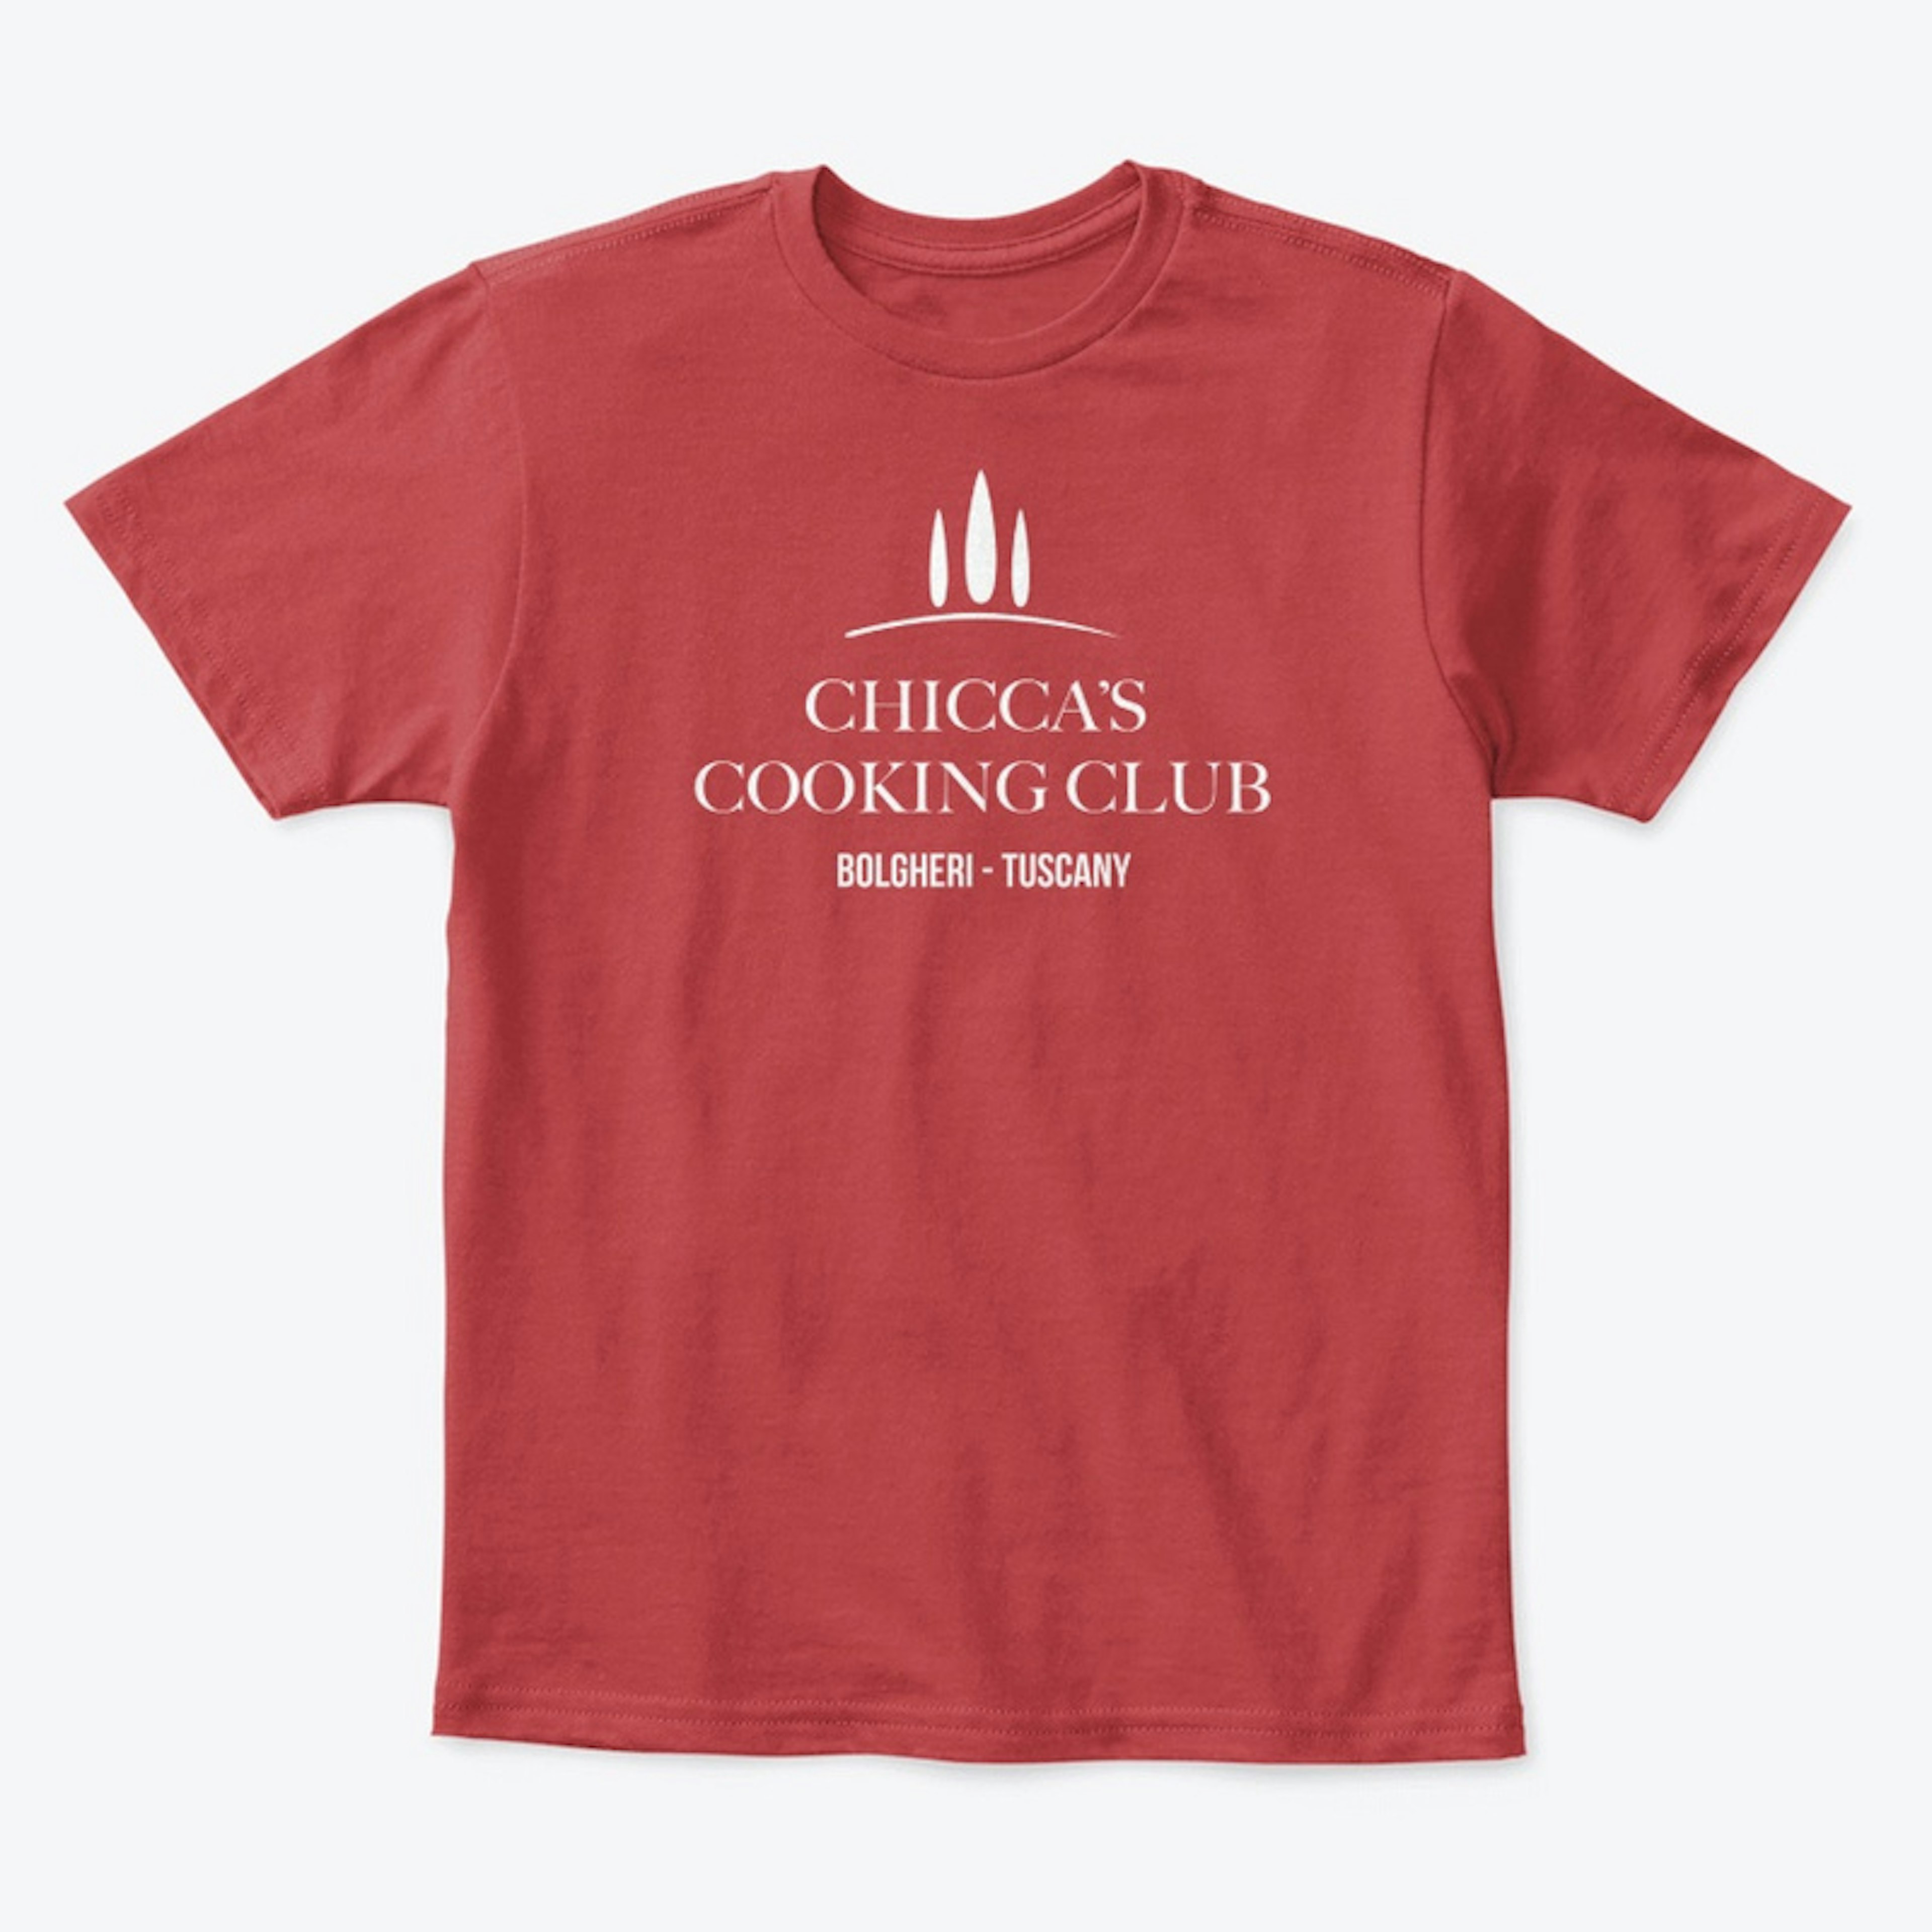 Club Shirts